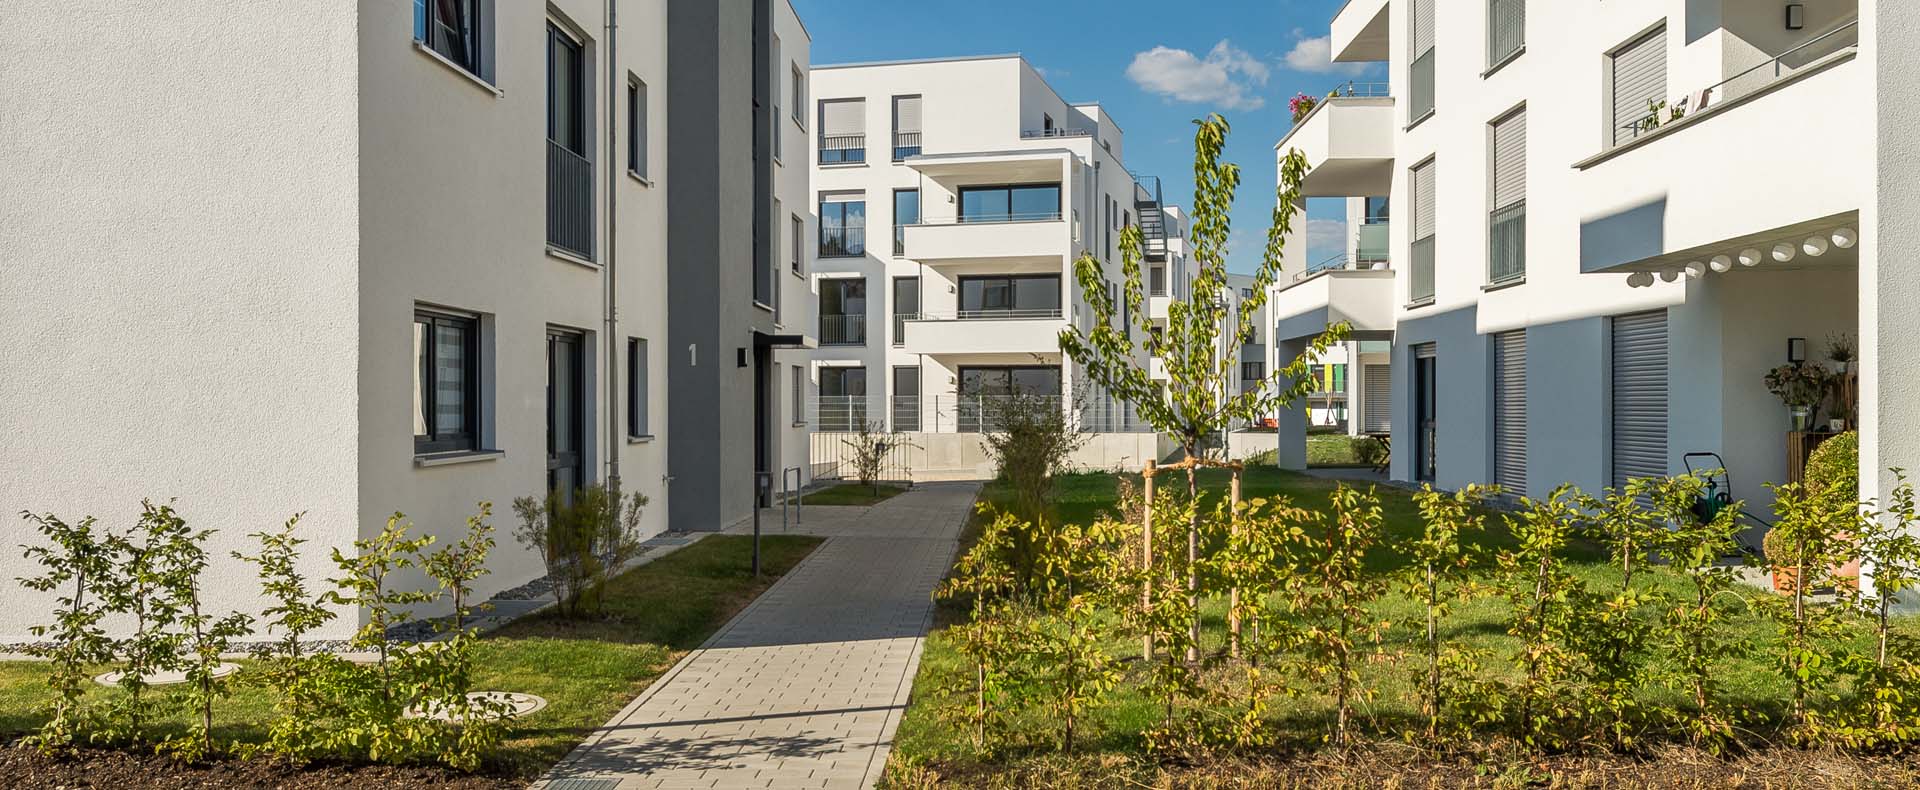 Wohnbebauung Tübingerstraße in Reutlinge. Baumaßnahme in 3 Bauabschnitten auf ehemaliger Industriefläche an Bahngleis. 4 GE, 1 Kindergarten, 12 Reihenhäuser, 66 Wohnheiten.